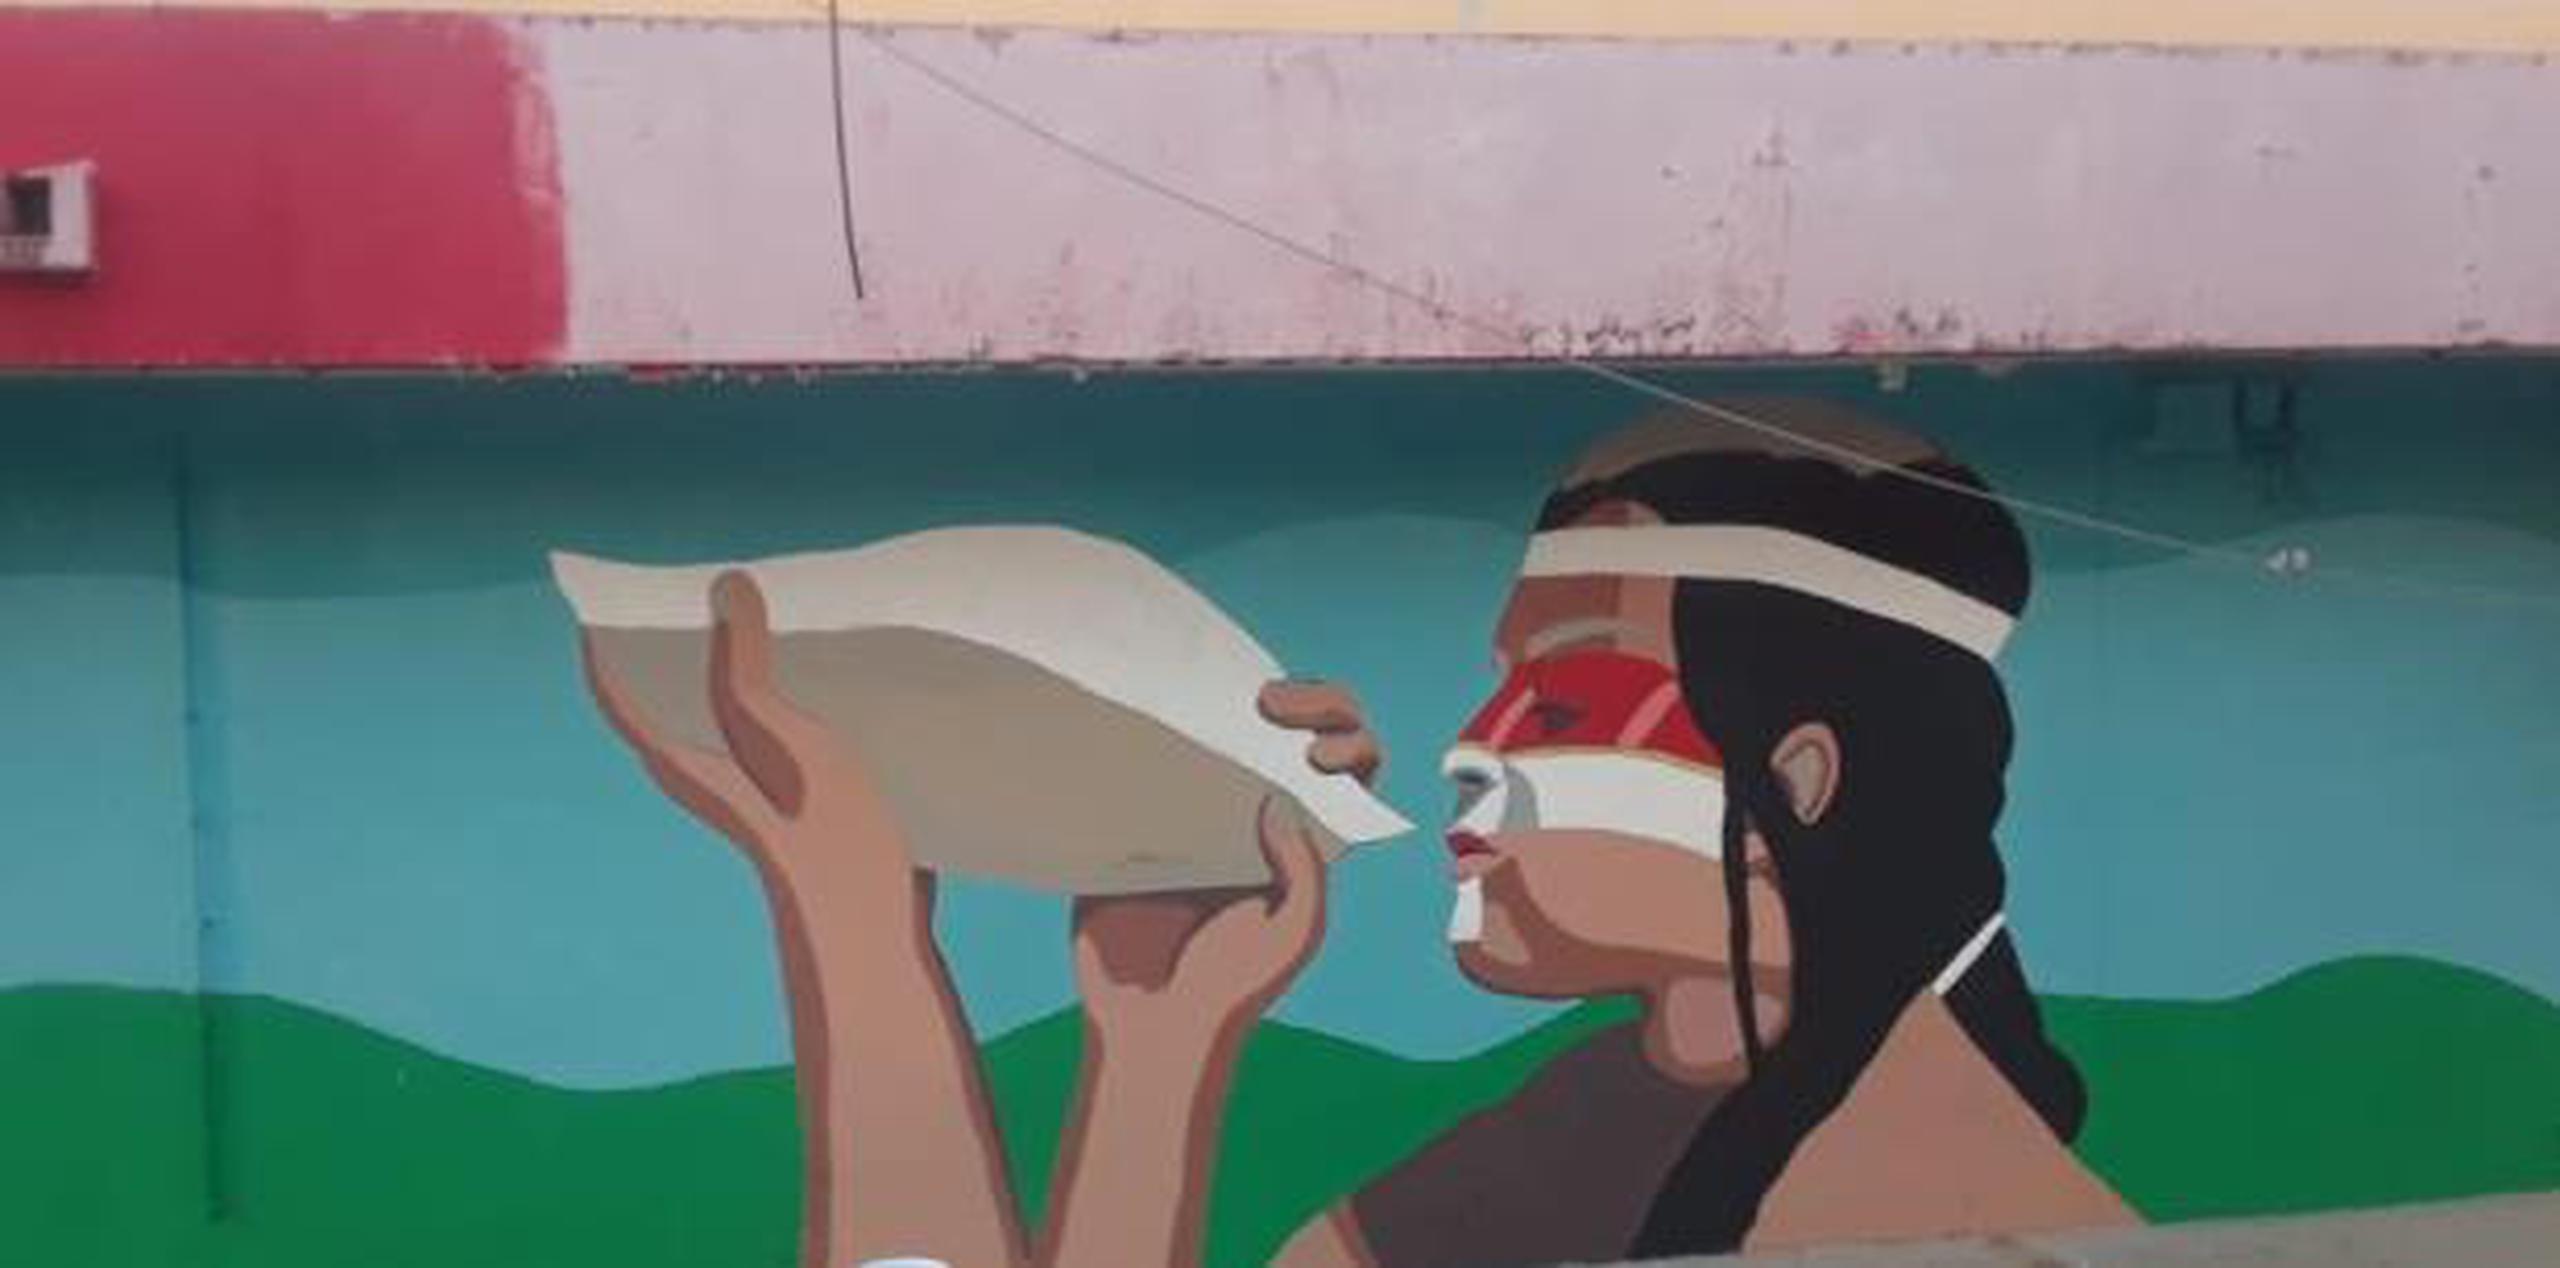 Algunos de los 30 artistas invitados a “Humacao grita” comenzaron sus murales, mientras que otros trabajarán sus obras en las próximas dos semanas. (Suministrada)